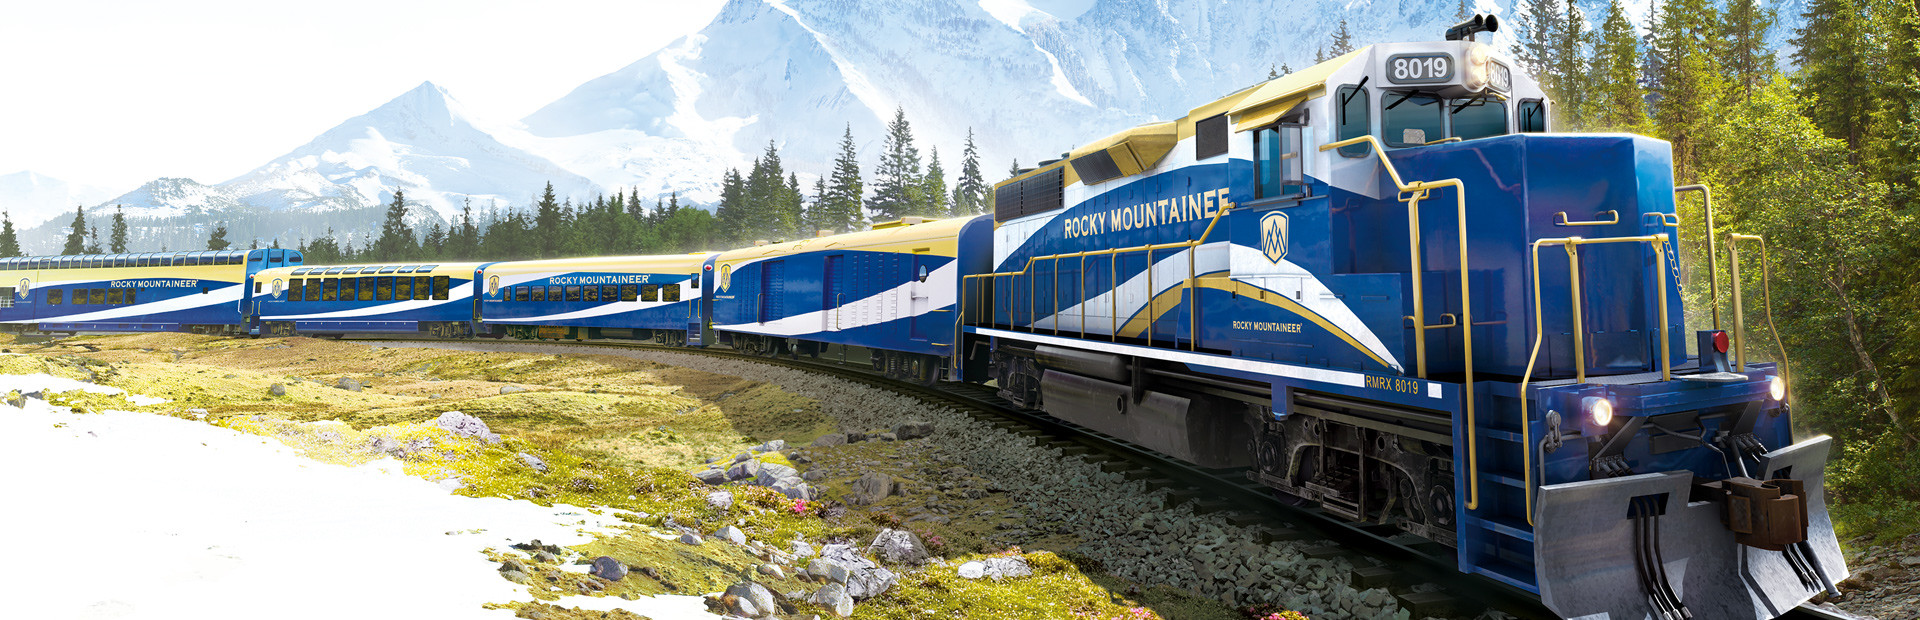 Trainz Railroad Simulator 2019 cover image